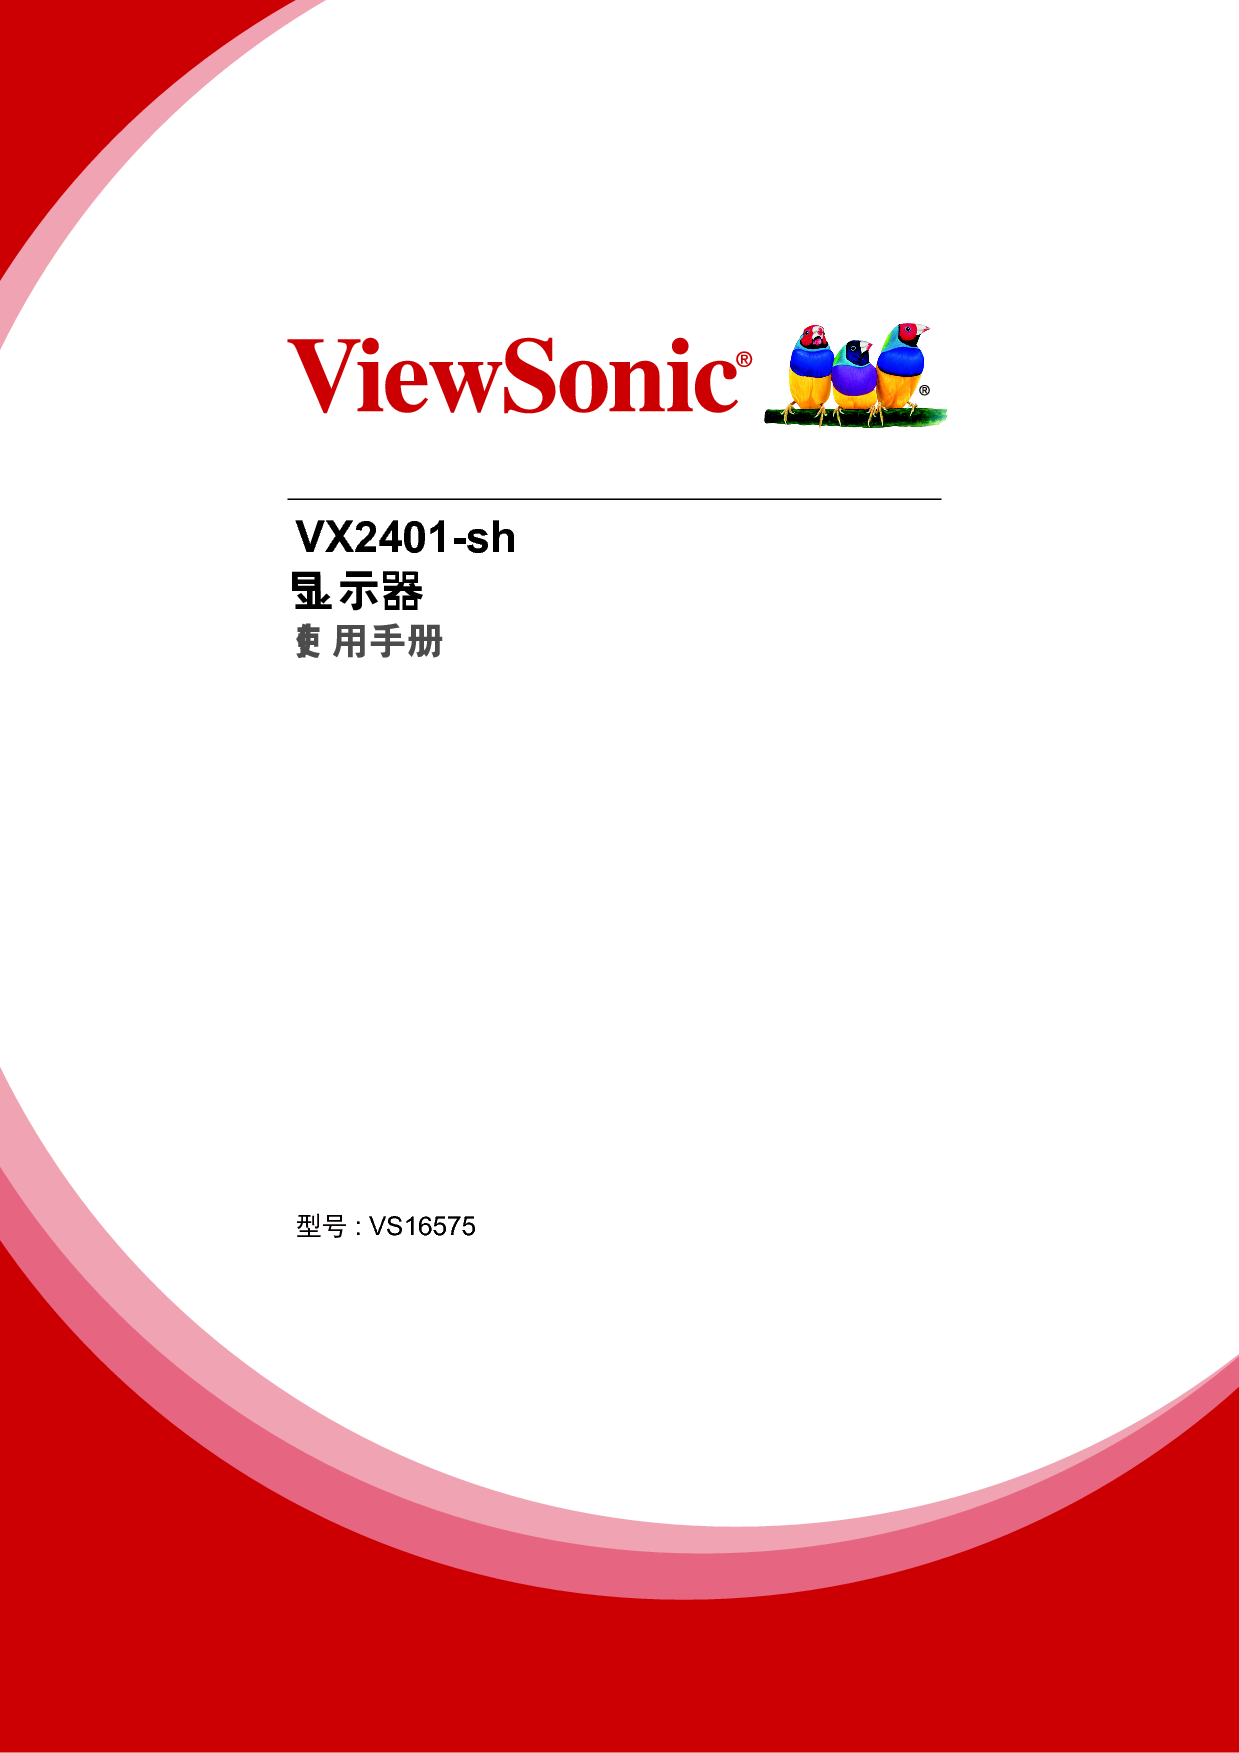 优派 ViewSonic VX2401-sh 使用手册 封面